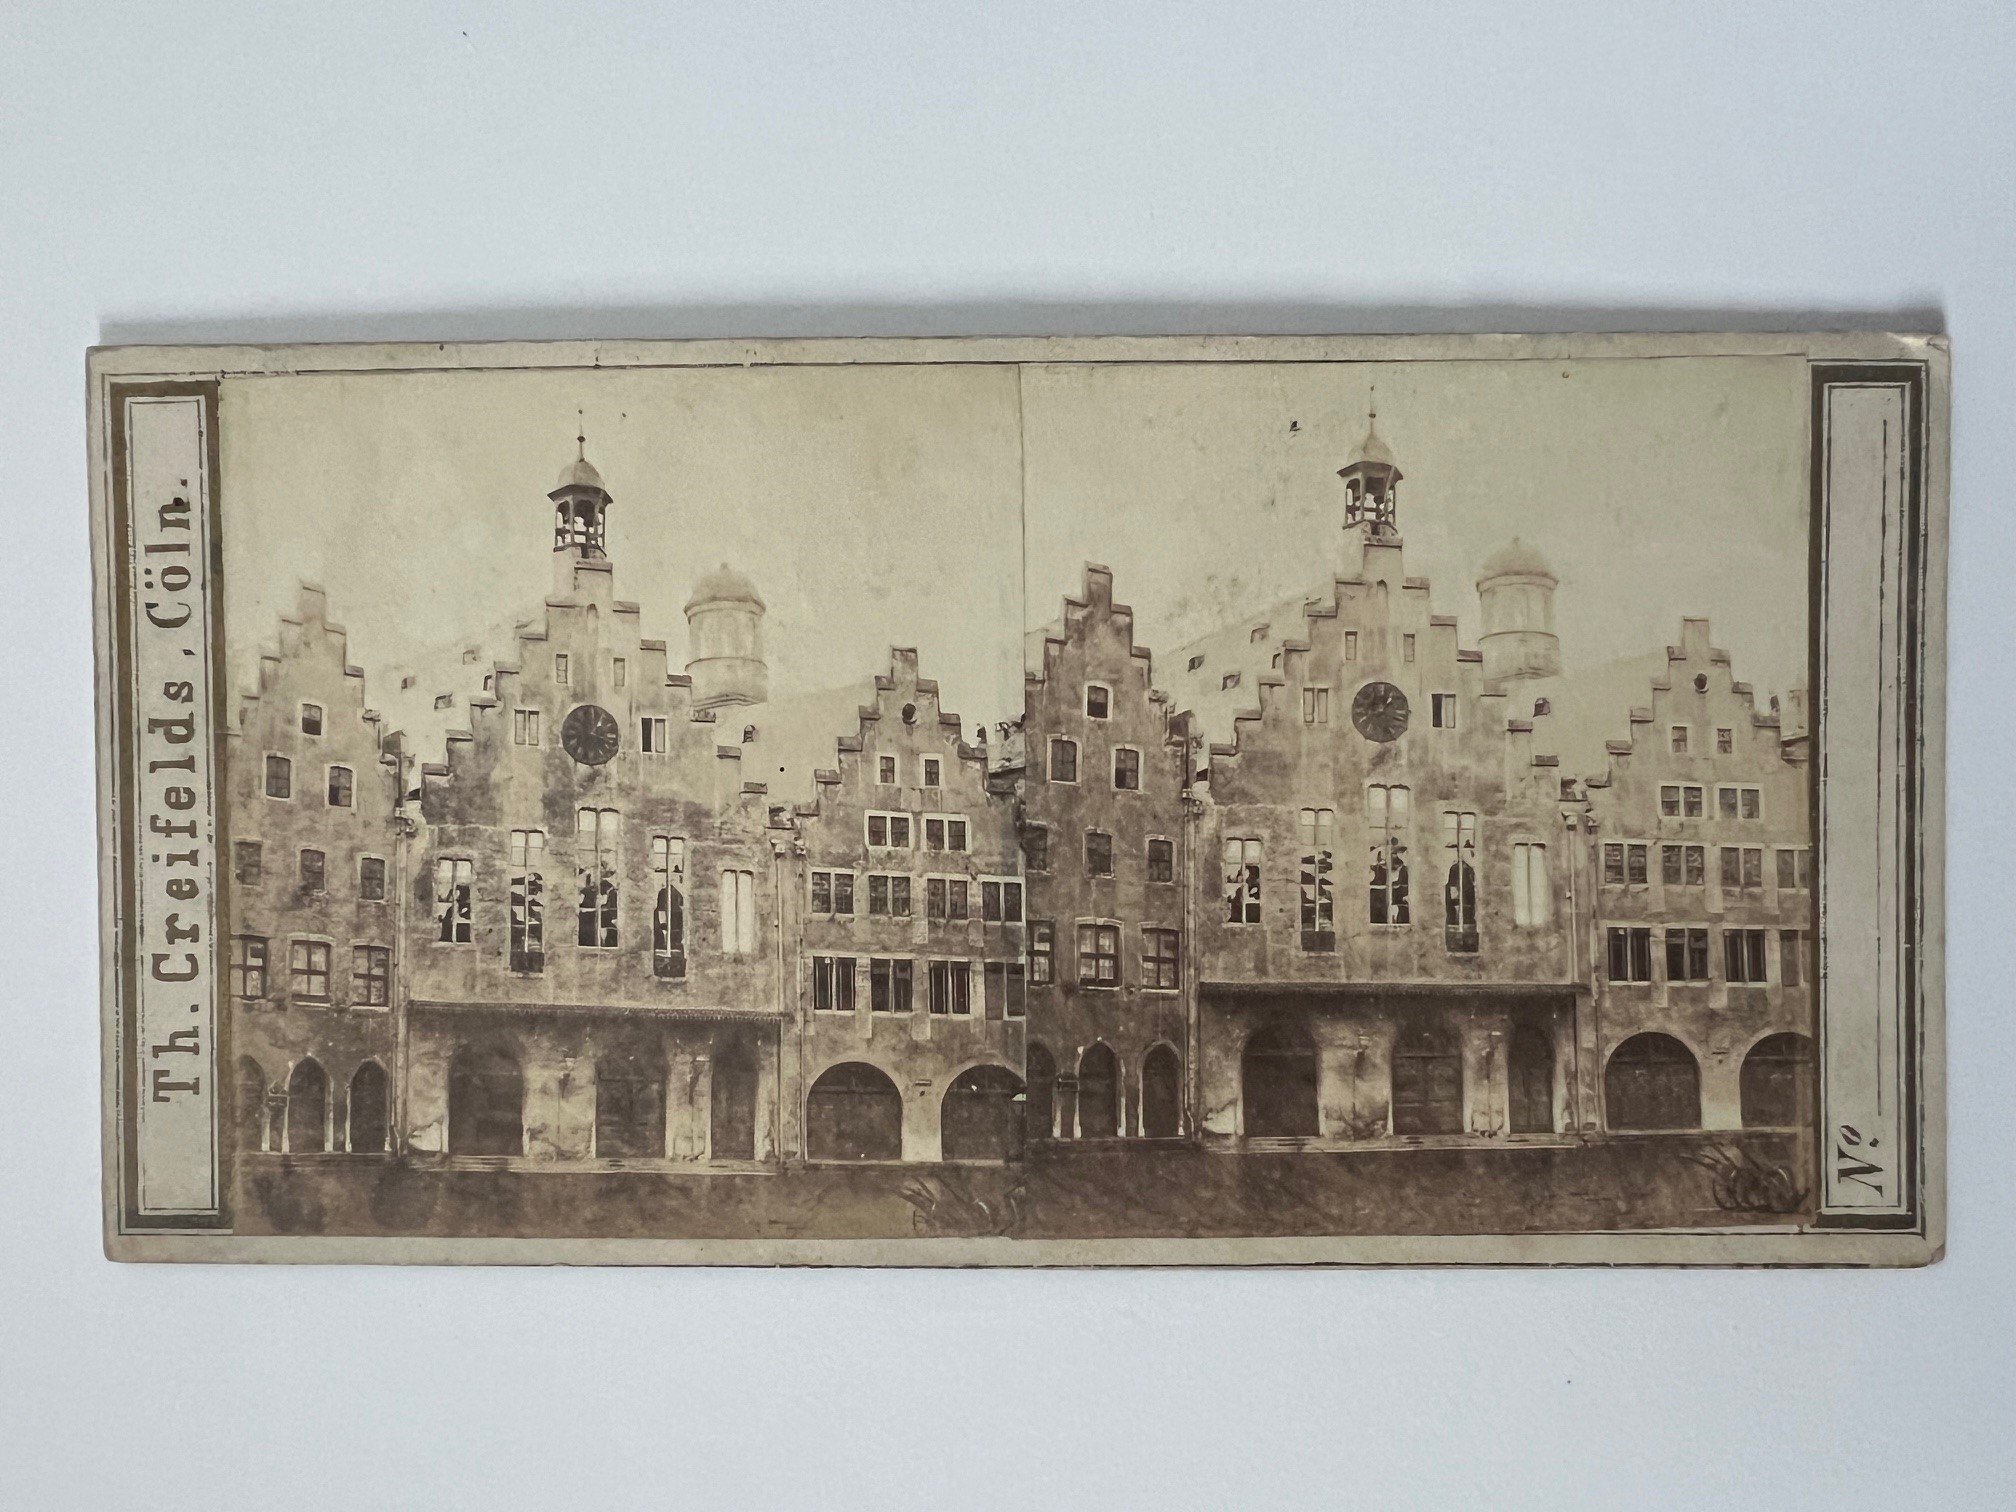 Stereobild, Theodor Creifelds, Frankfurt, Nr. 273, Römer, ca. 1870. (Taunus-Rhein-Main - Regionalgeschichtliche Sammlung Dr. Stefan Naas CC BY-NC-SA)